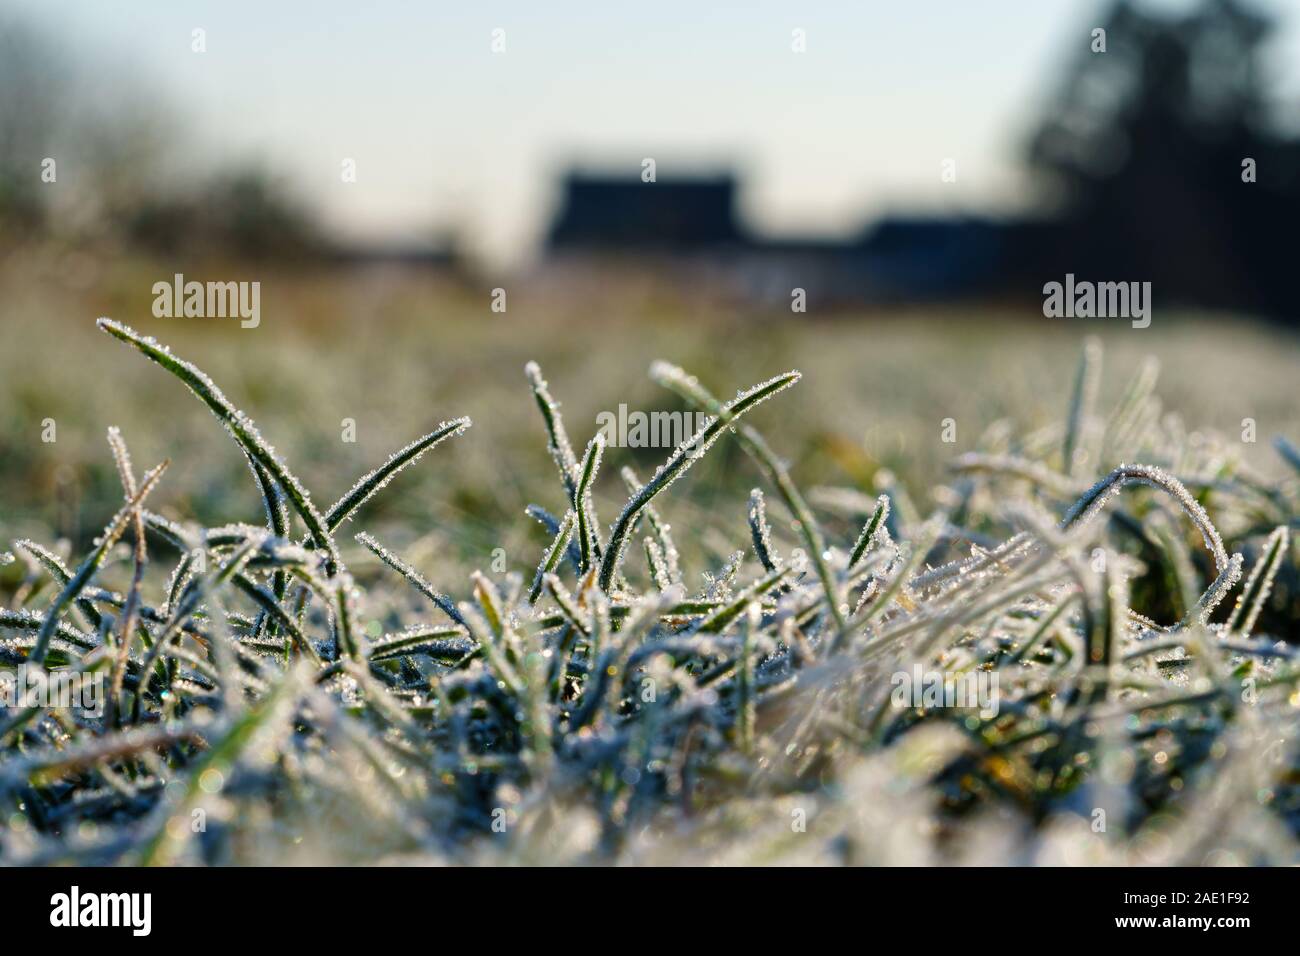 Brins d'herbe recouverte de cristaux de glace, de givre pelouse arrière et maisons en arrière-plan flou. Concept de la saison d'hiver, la température froide Banque D'Images